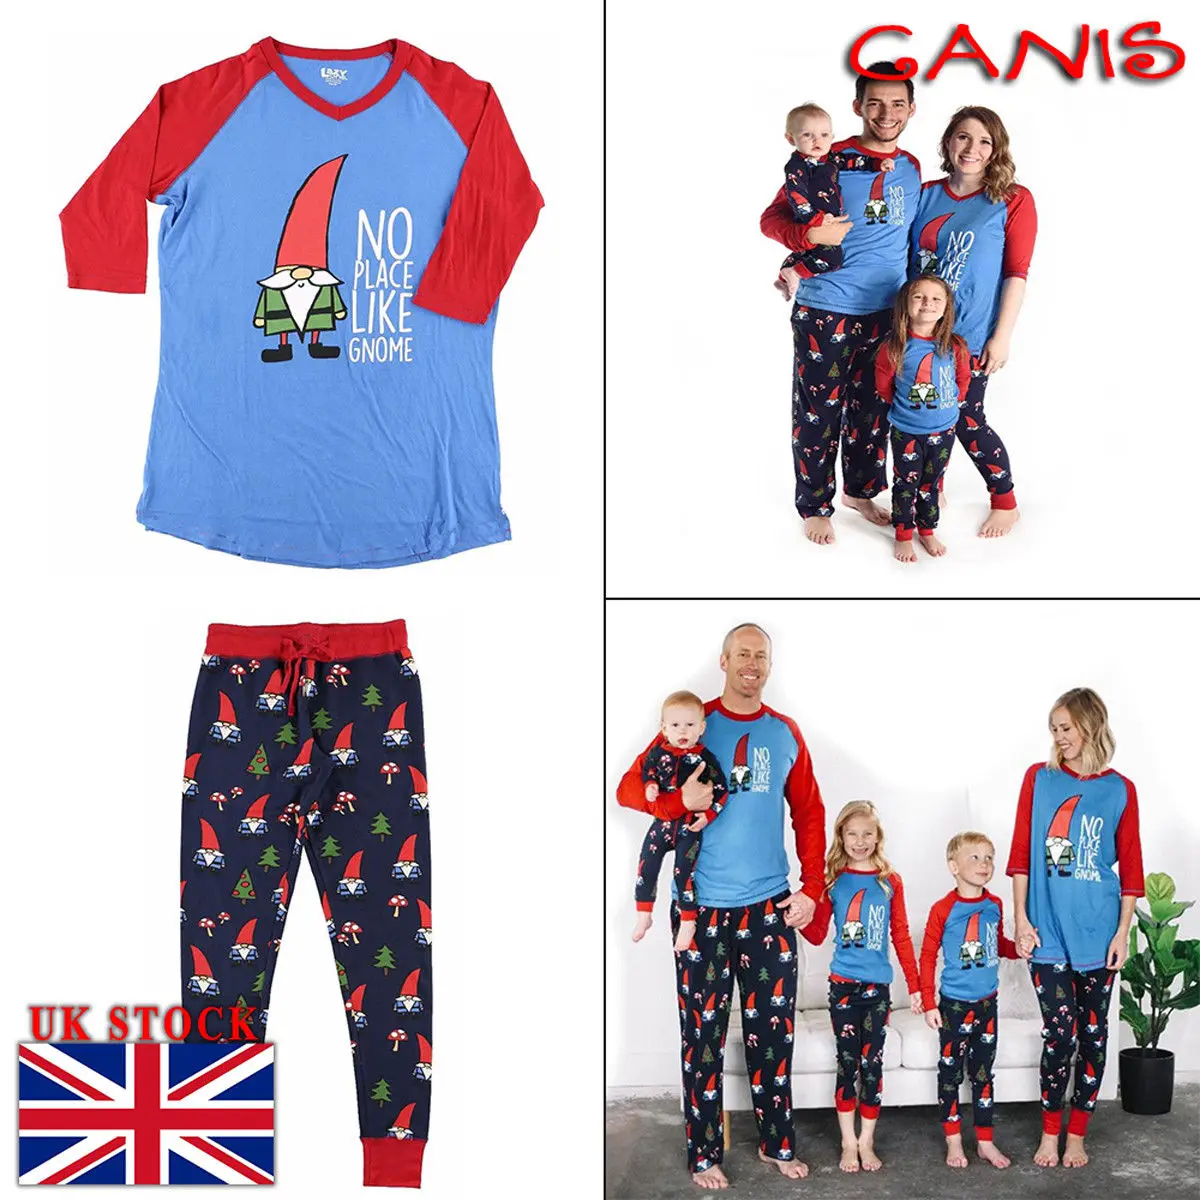 Теплые рождественские пижамные комплекты одинаковые пижамы для всей семьи, мамы, папы, детей, шляпа для животных, необычные рождественские домашние наборы с длинными рукавами, синего, красного цветов, Санта-Клауса